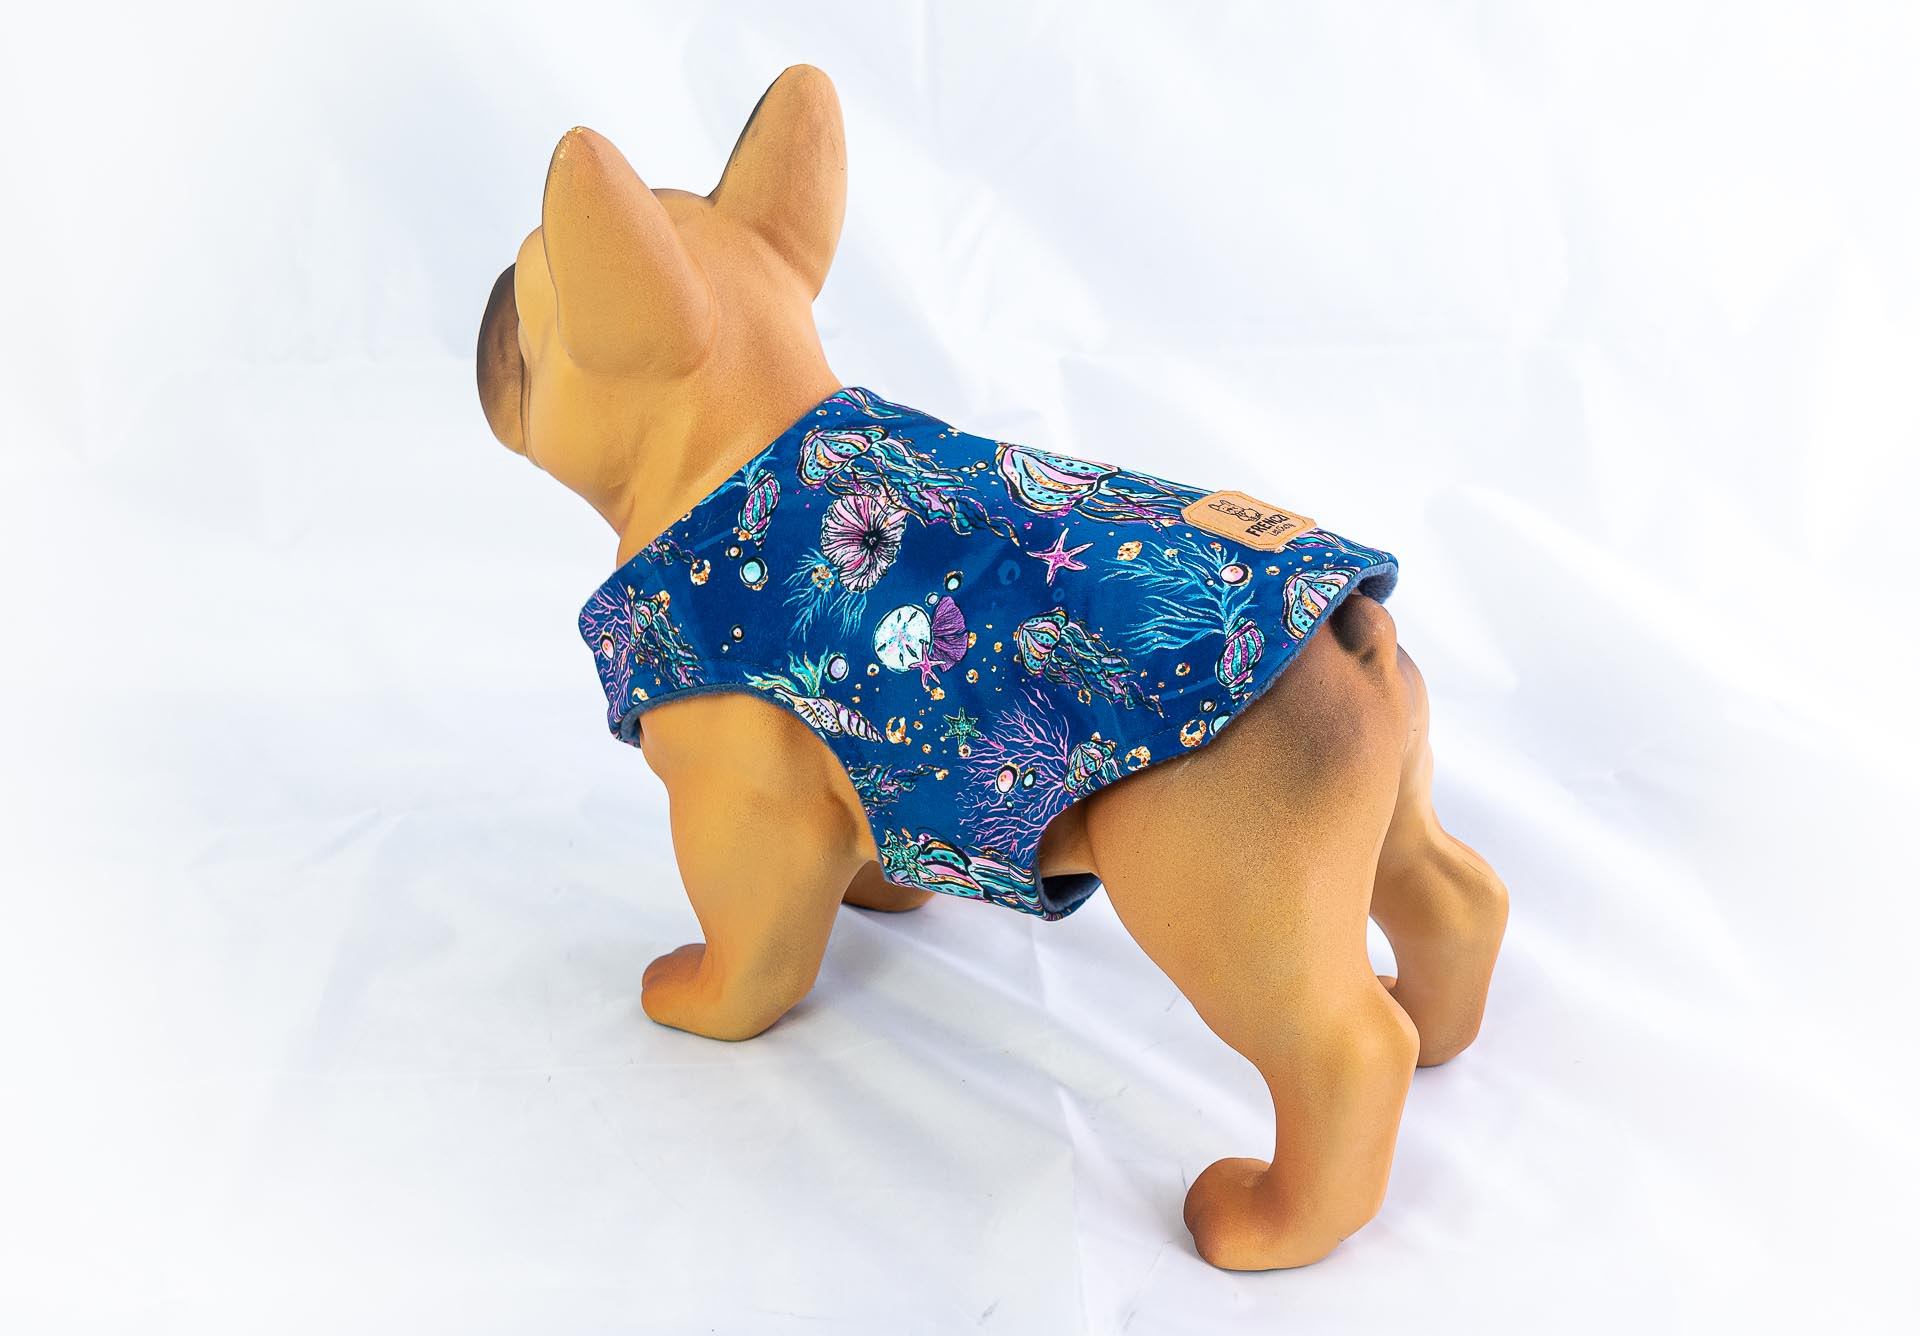 Kurtka przeciwdeszczowa dla psa marki Frenczi. Zdjęcie ubranka dla psa na miarę. Wzór Podwodny świat